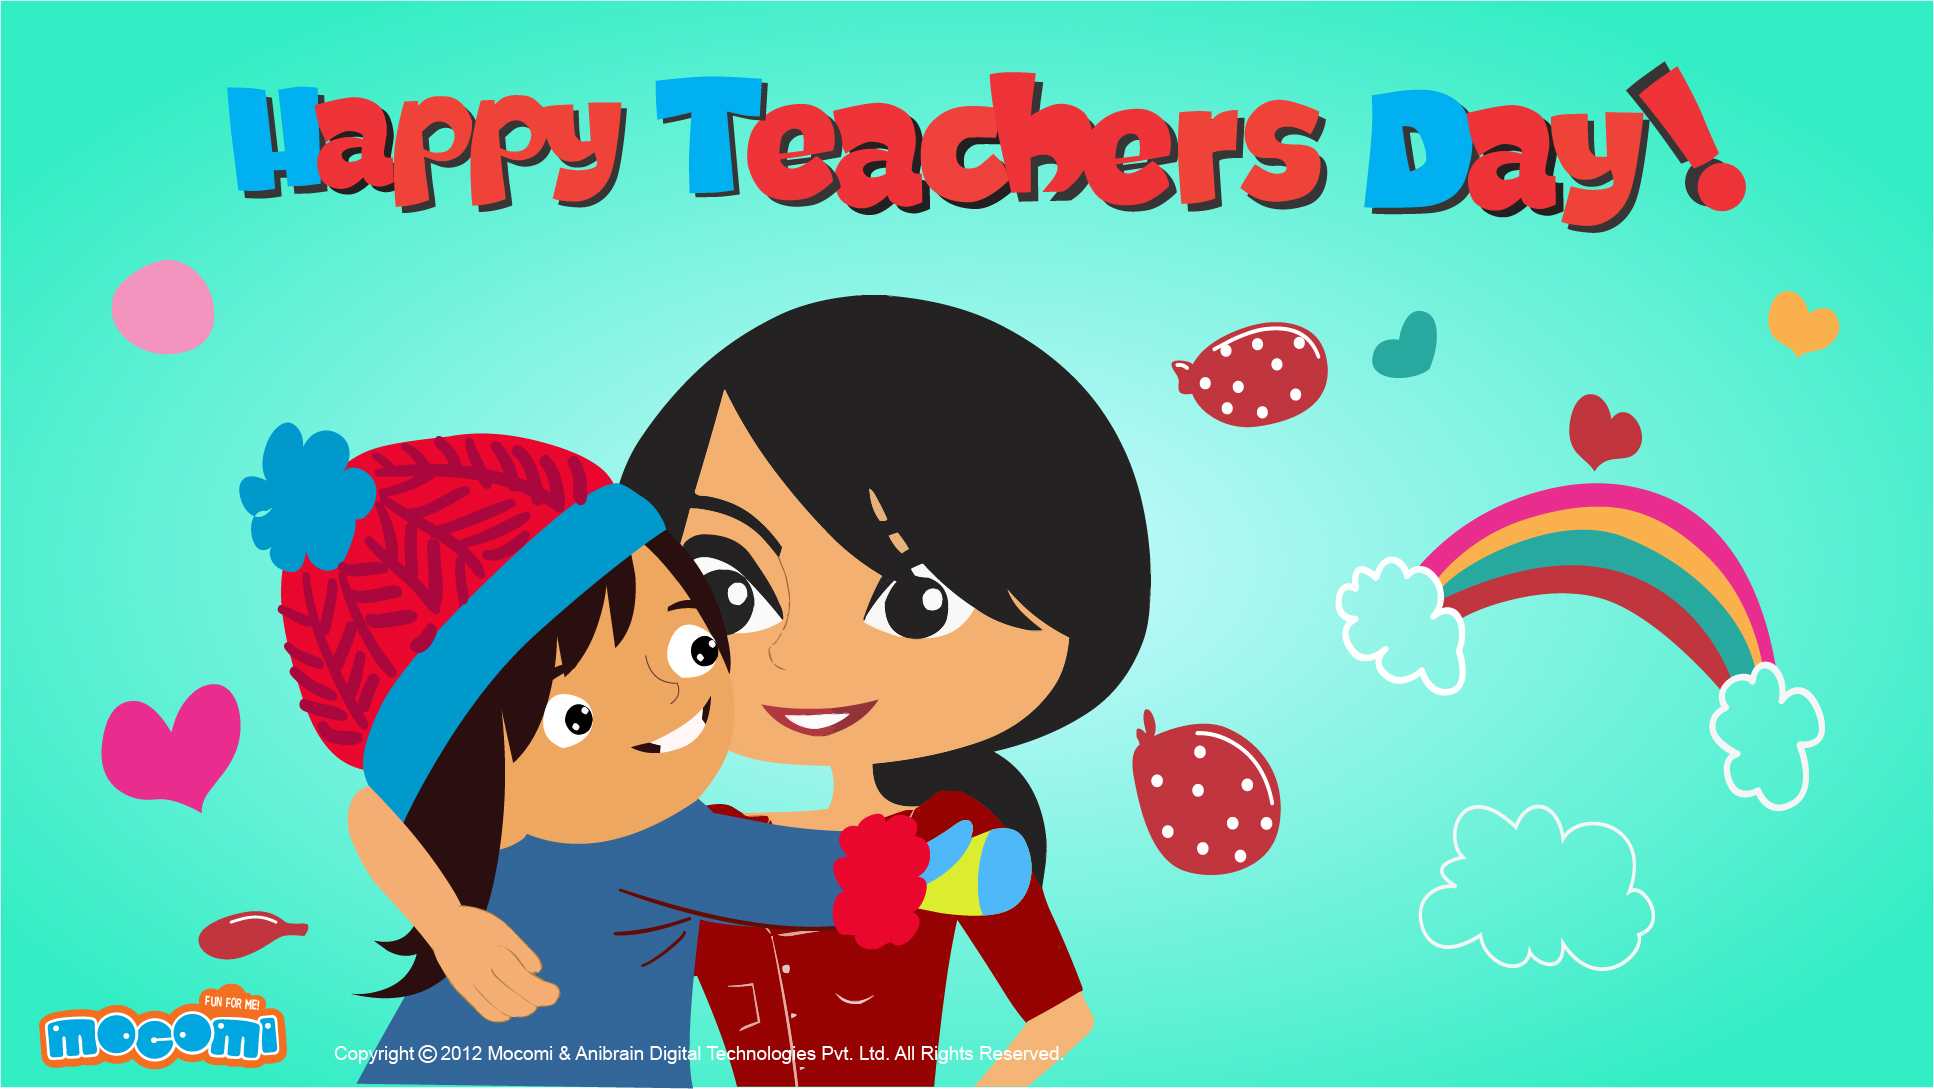 Happy Teachers’ Day! 06